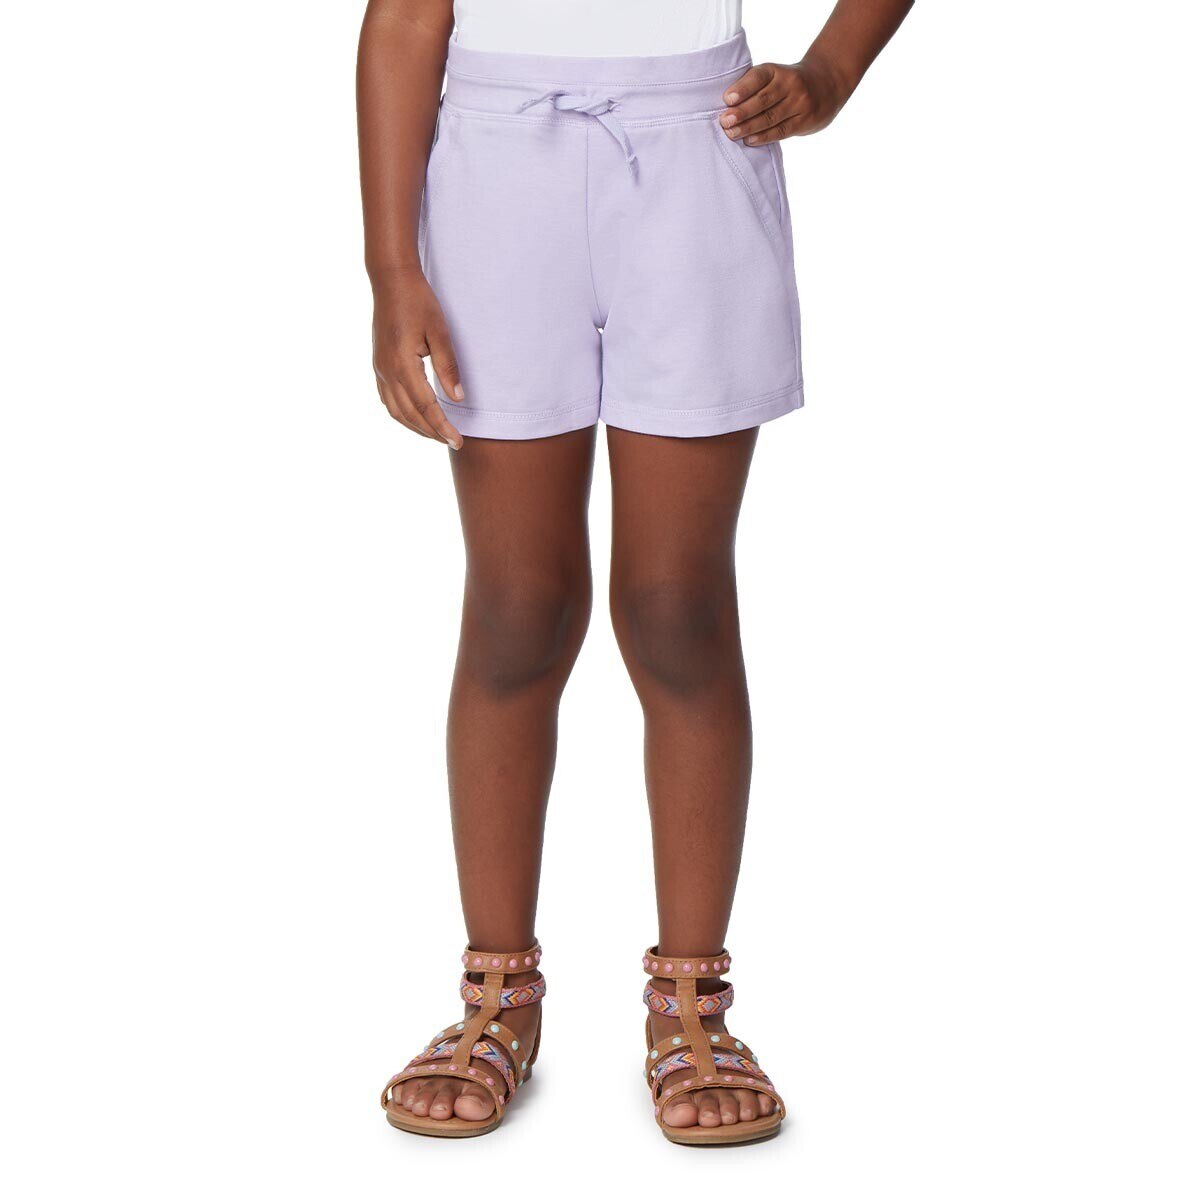 32 Degrees 兒童短褲 2件組 紫色組 S